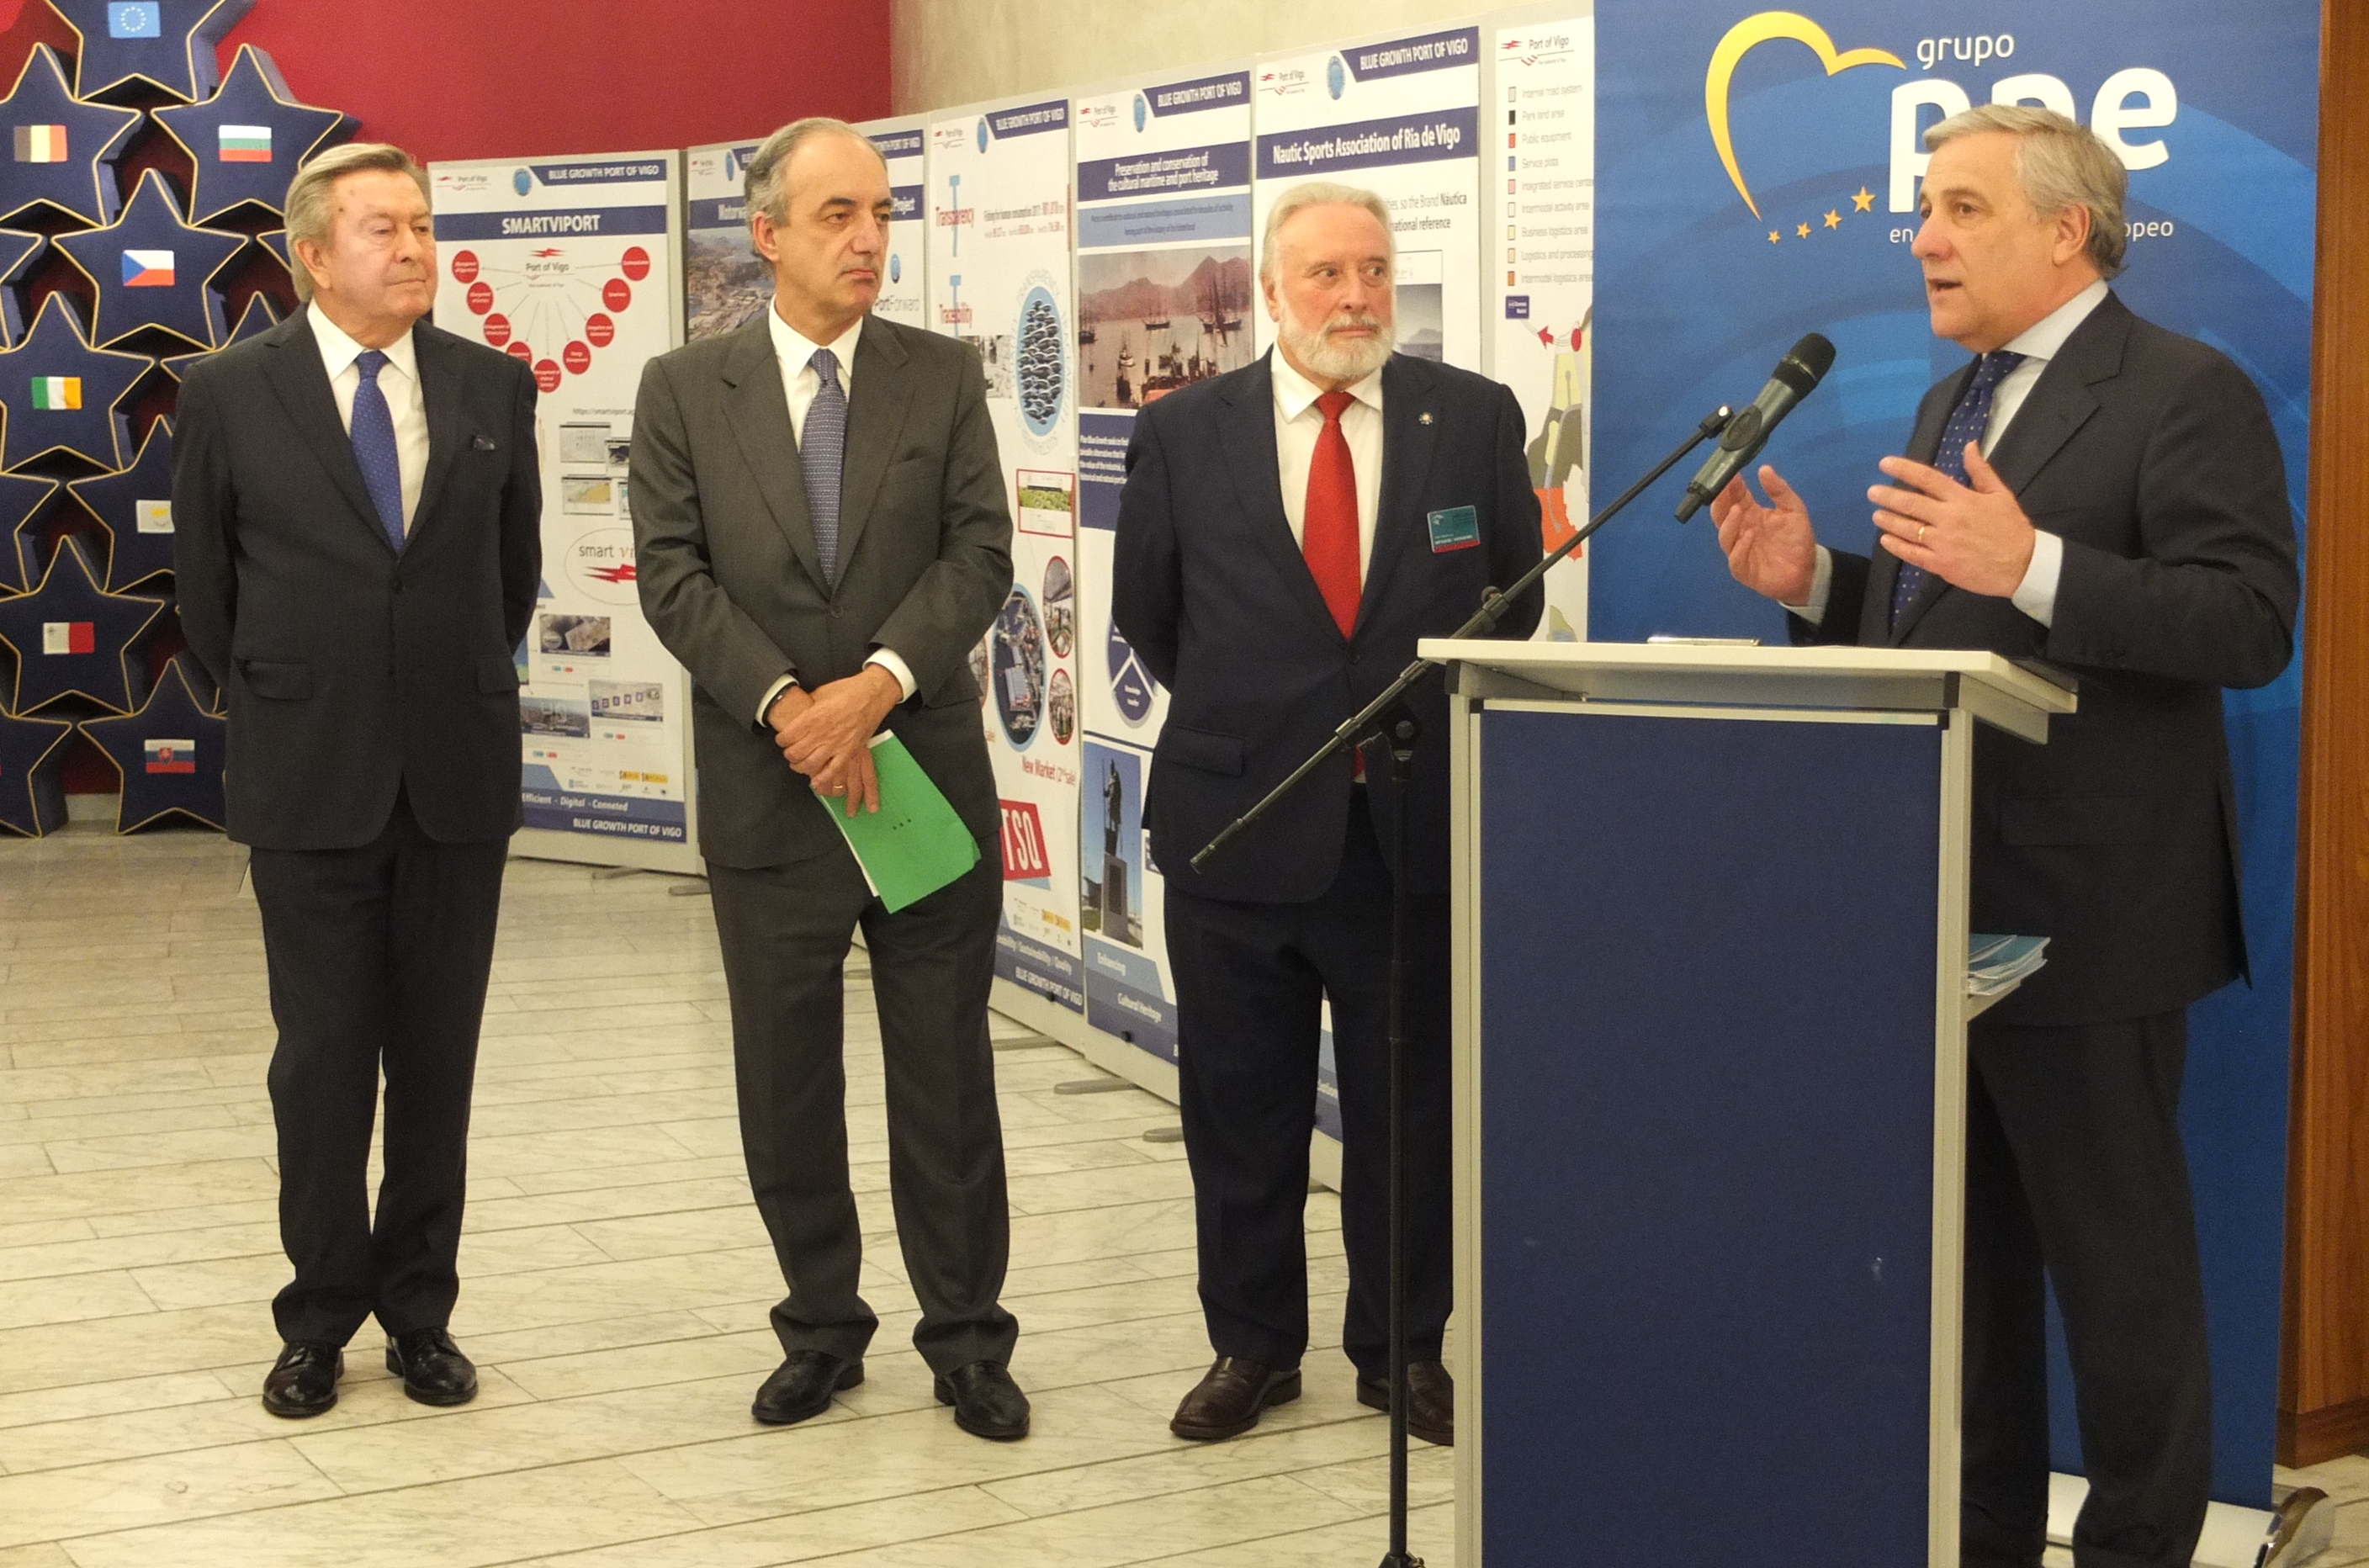 El presidente del Puerto de Vigo presenta en el Parlamento Europeo los resultados de su estrategia de crecimiento azul